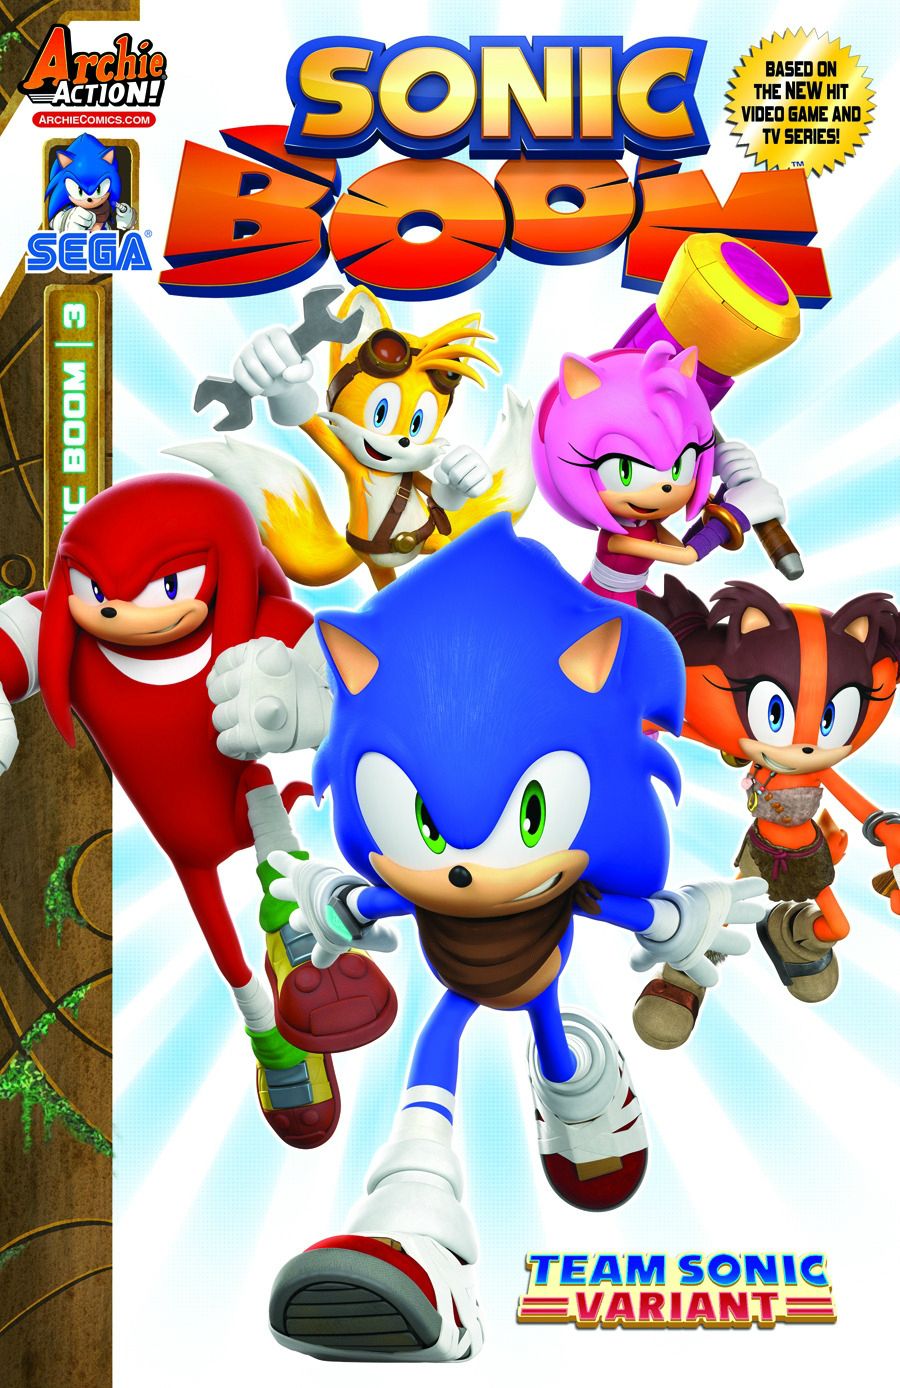 Sonic Boom (1ª Temporada) - 5 de Julho de 2015